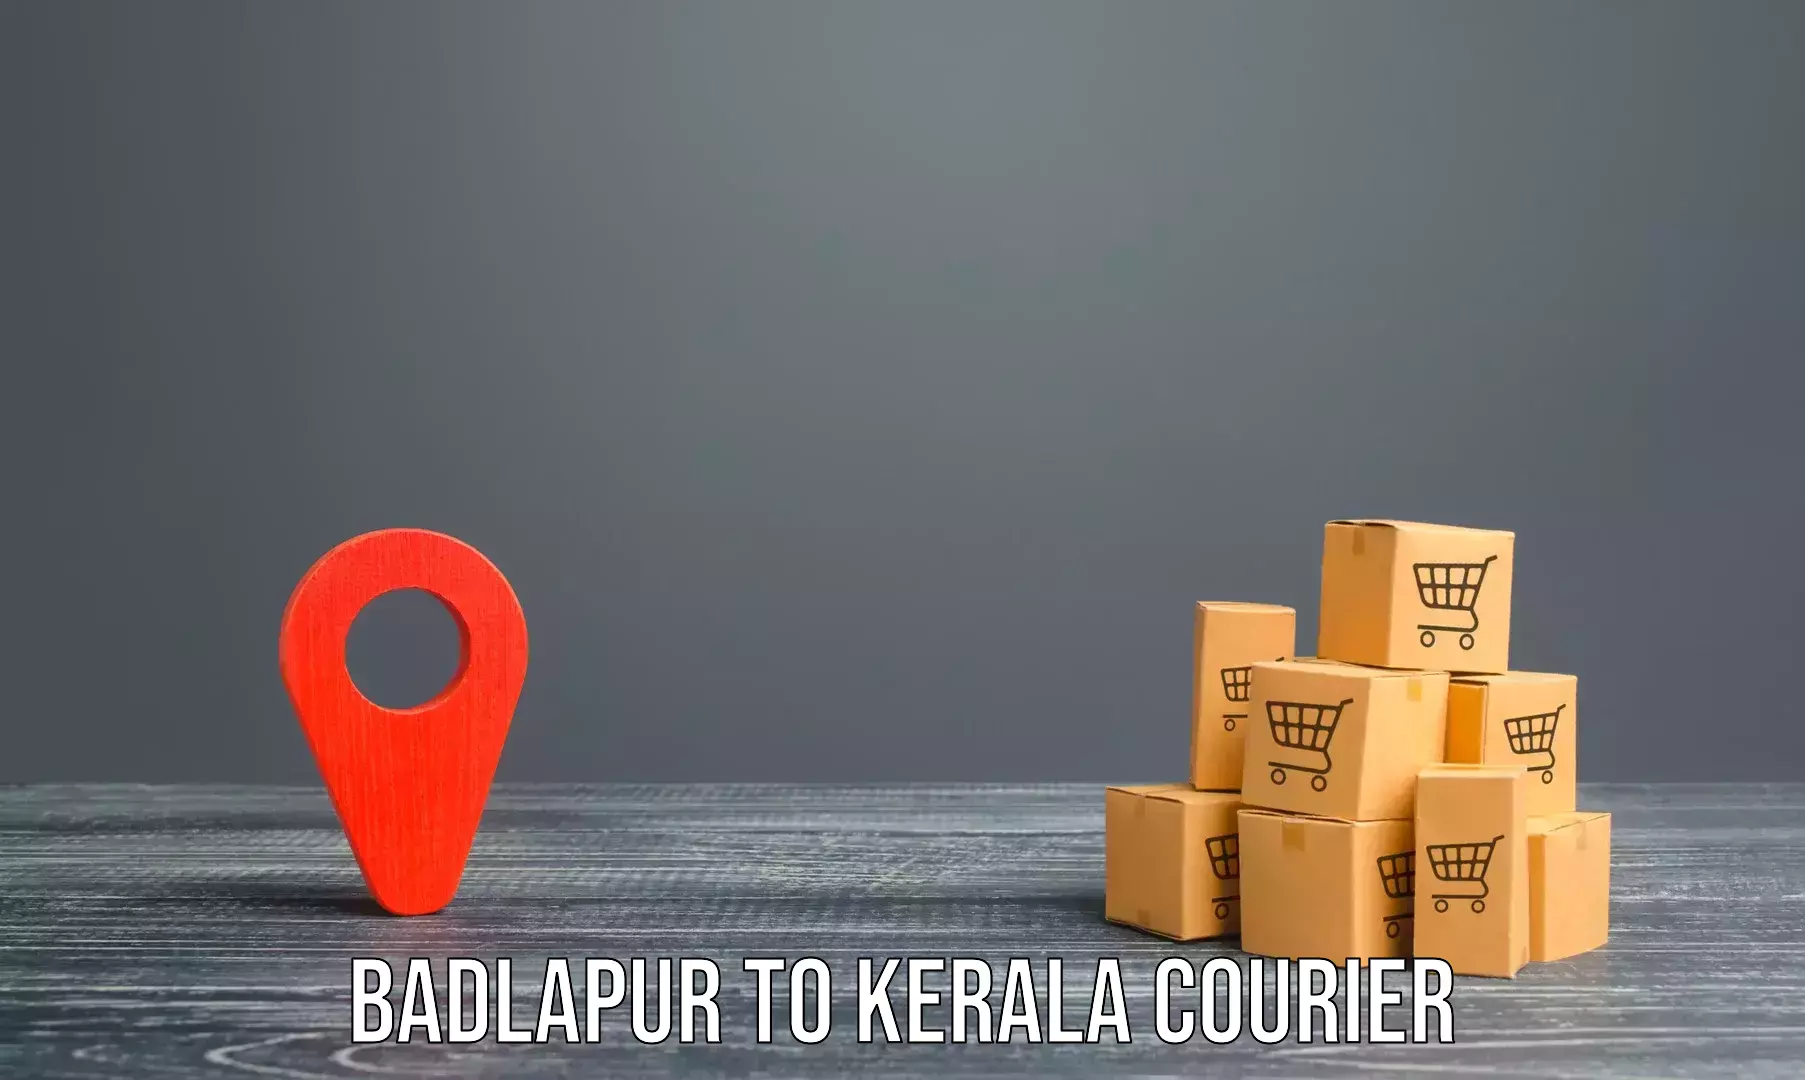 Furniture transport company Badlapur to Kothamangalam